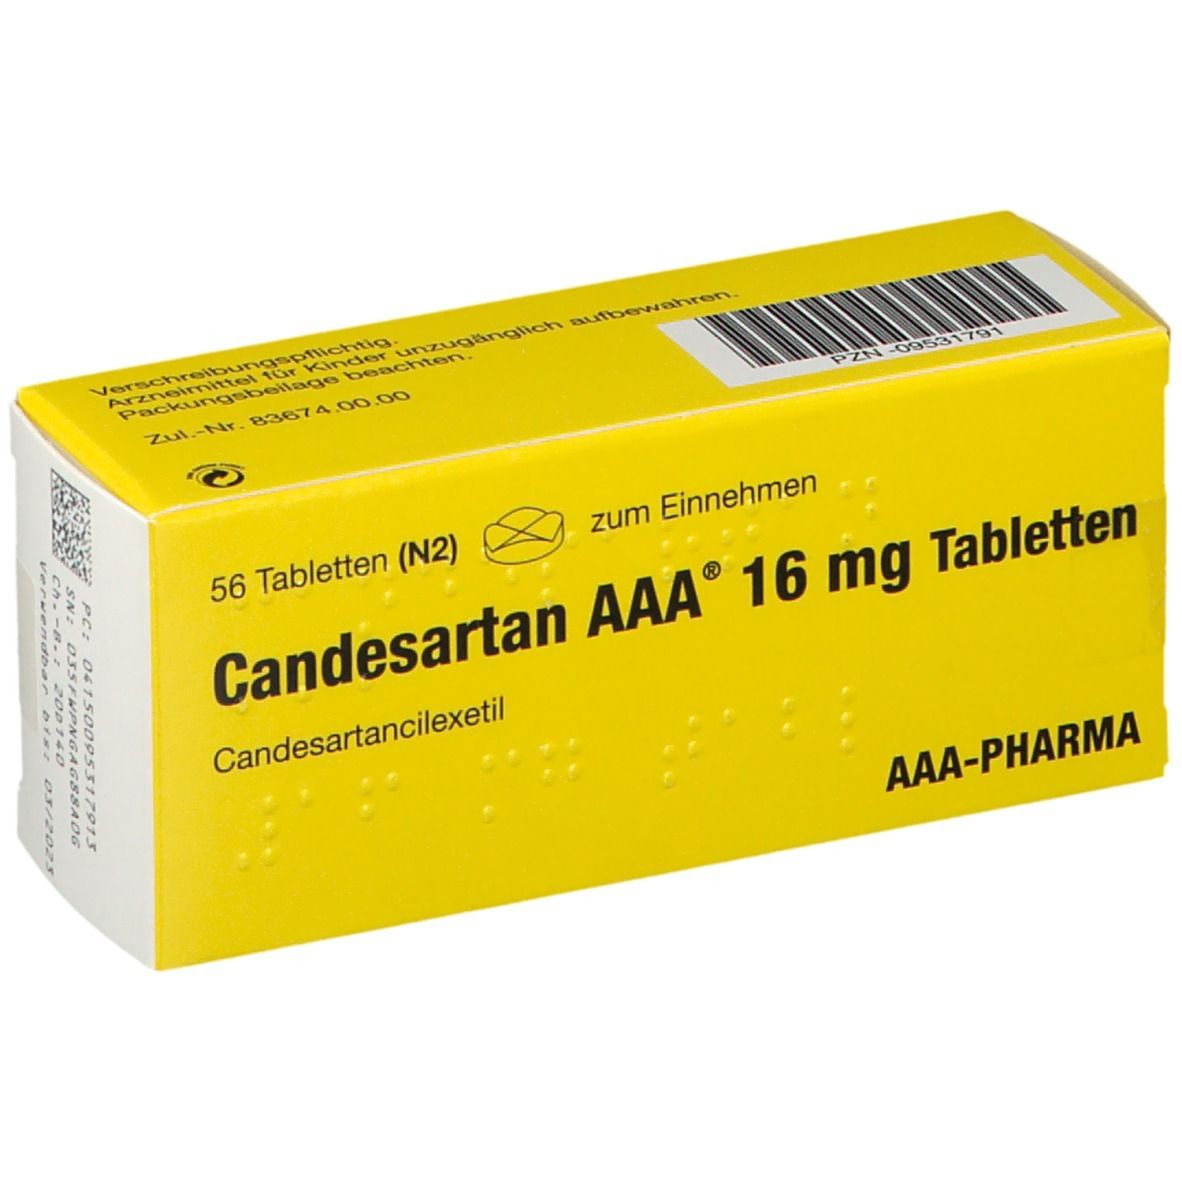 Candesartan AAA® 16 mg